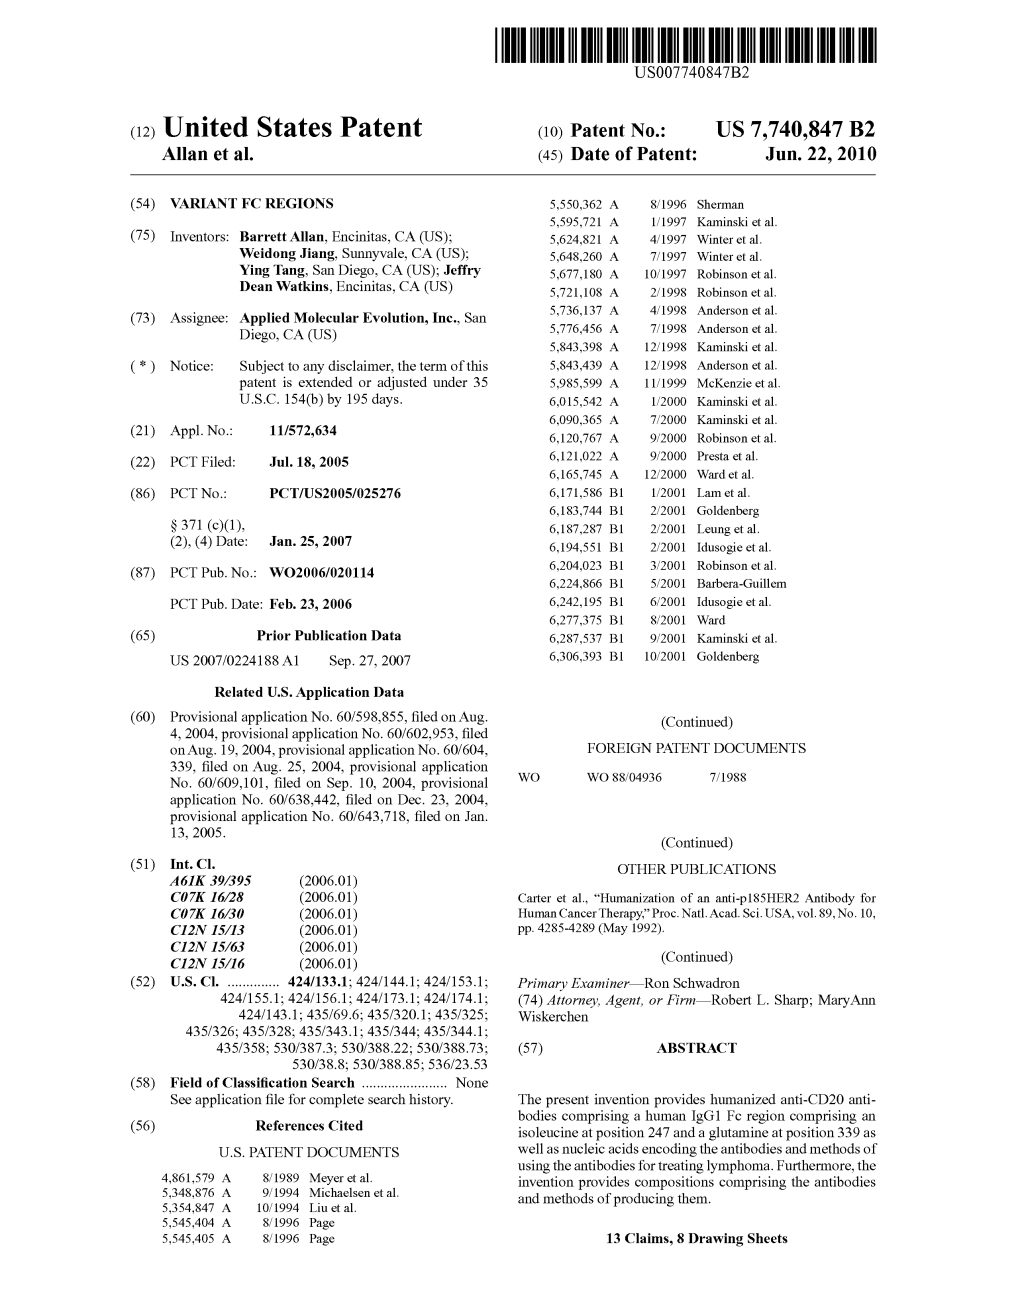 (12) Unlted States Patent (10) Patent No.: US 7,740,847 B2 Allan Et Al